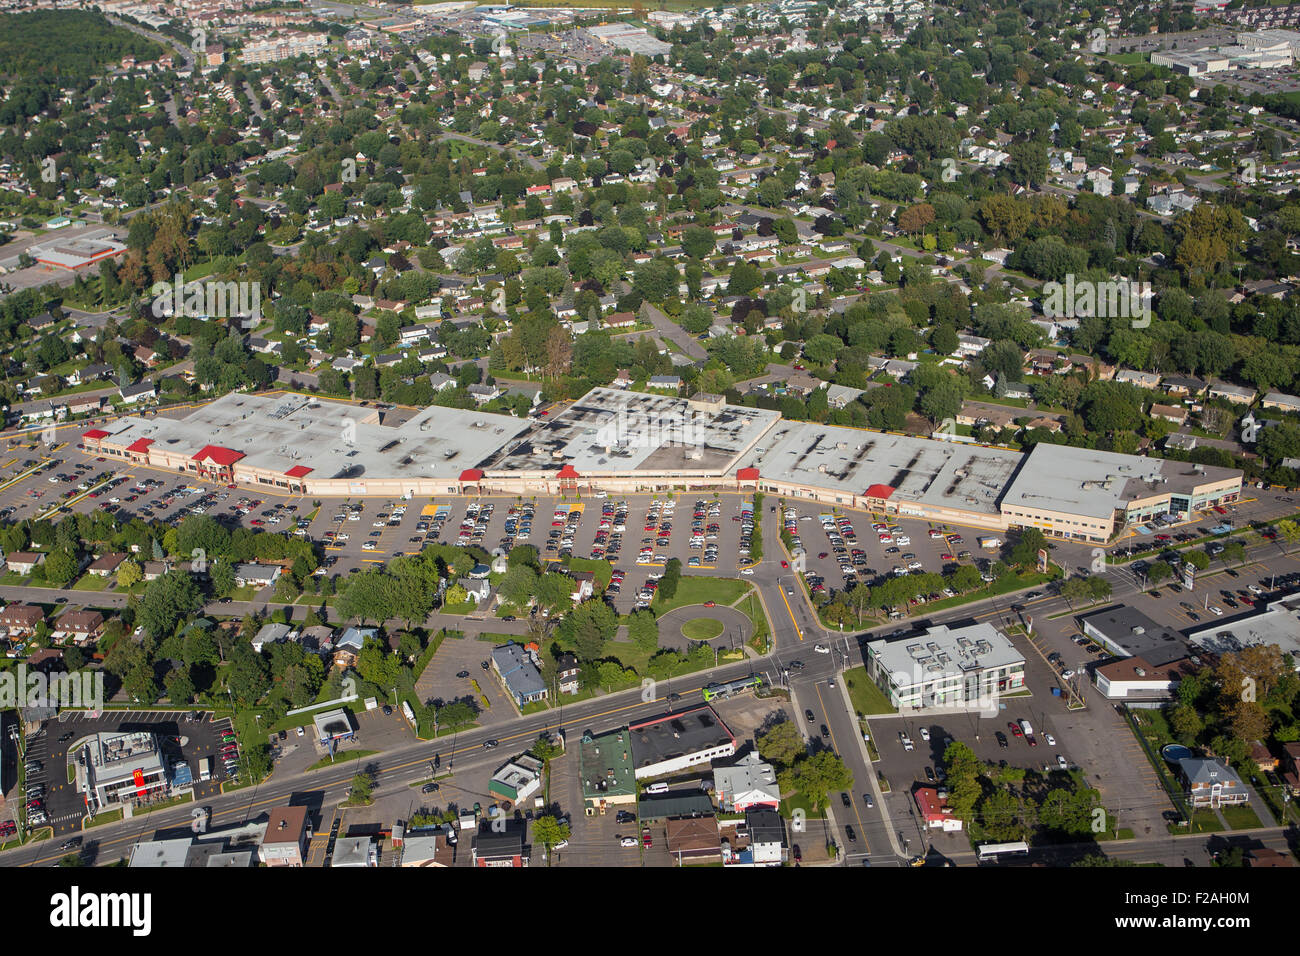 Centre commercial Carrefour Charlesbourg est représentée dans cette vue aérienne de la ville de Québec Banque D'Images